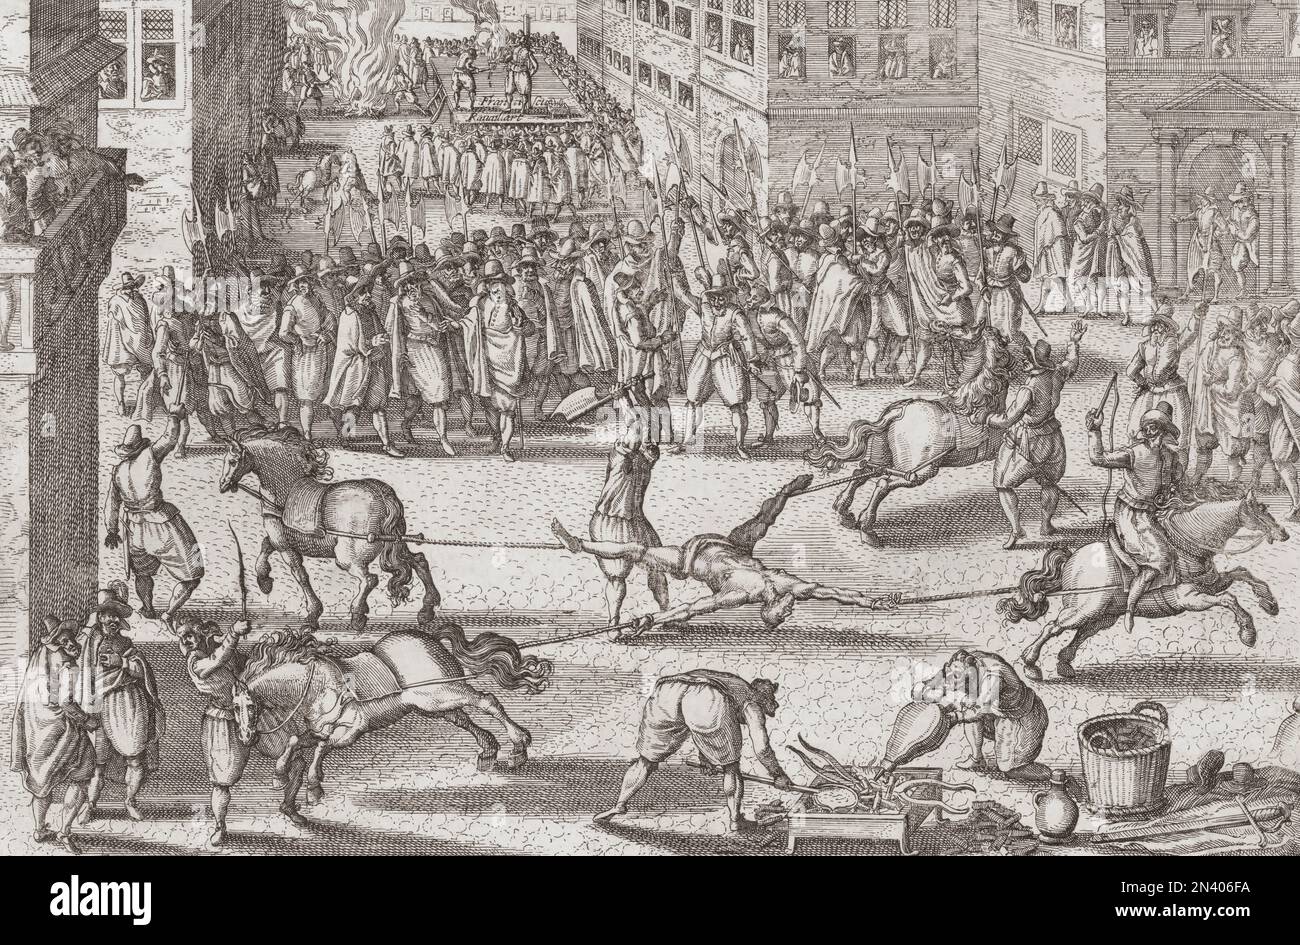 Hinrichtung von Francois Ravaillac, ca. 1578 - 1610. Ravaillac, ein fanatischer Katholik, tötete den französischen König Heinrich IV. In dem Glauben, der König würde einen Krieg gegen den Papst beginnen. Bei seiner Hinrichtung wurde er gefoltert und dann von vier Pferden auseinandergerissen, ein Tod, der für Regizide reserviert war. Nach einem zeitgenössischen Aufdruck. Stockfoto